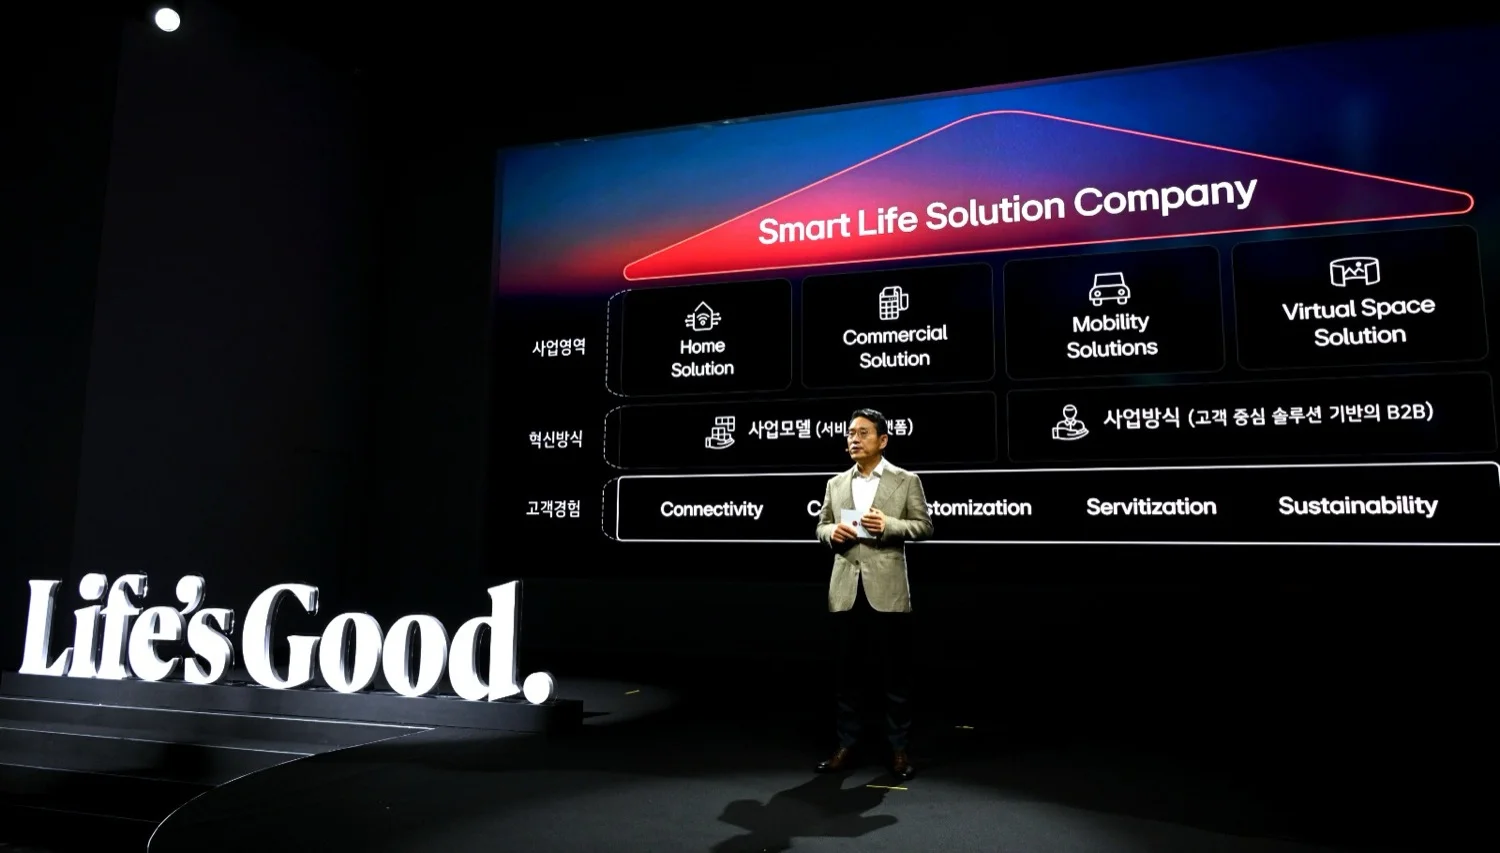 CEO de LG anuncia estrategia para transformar la compañía